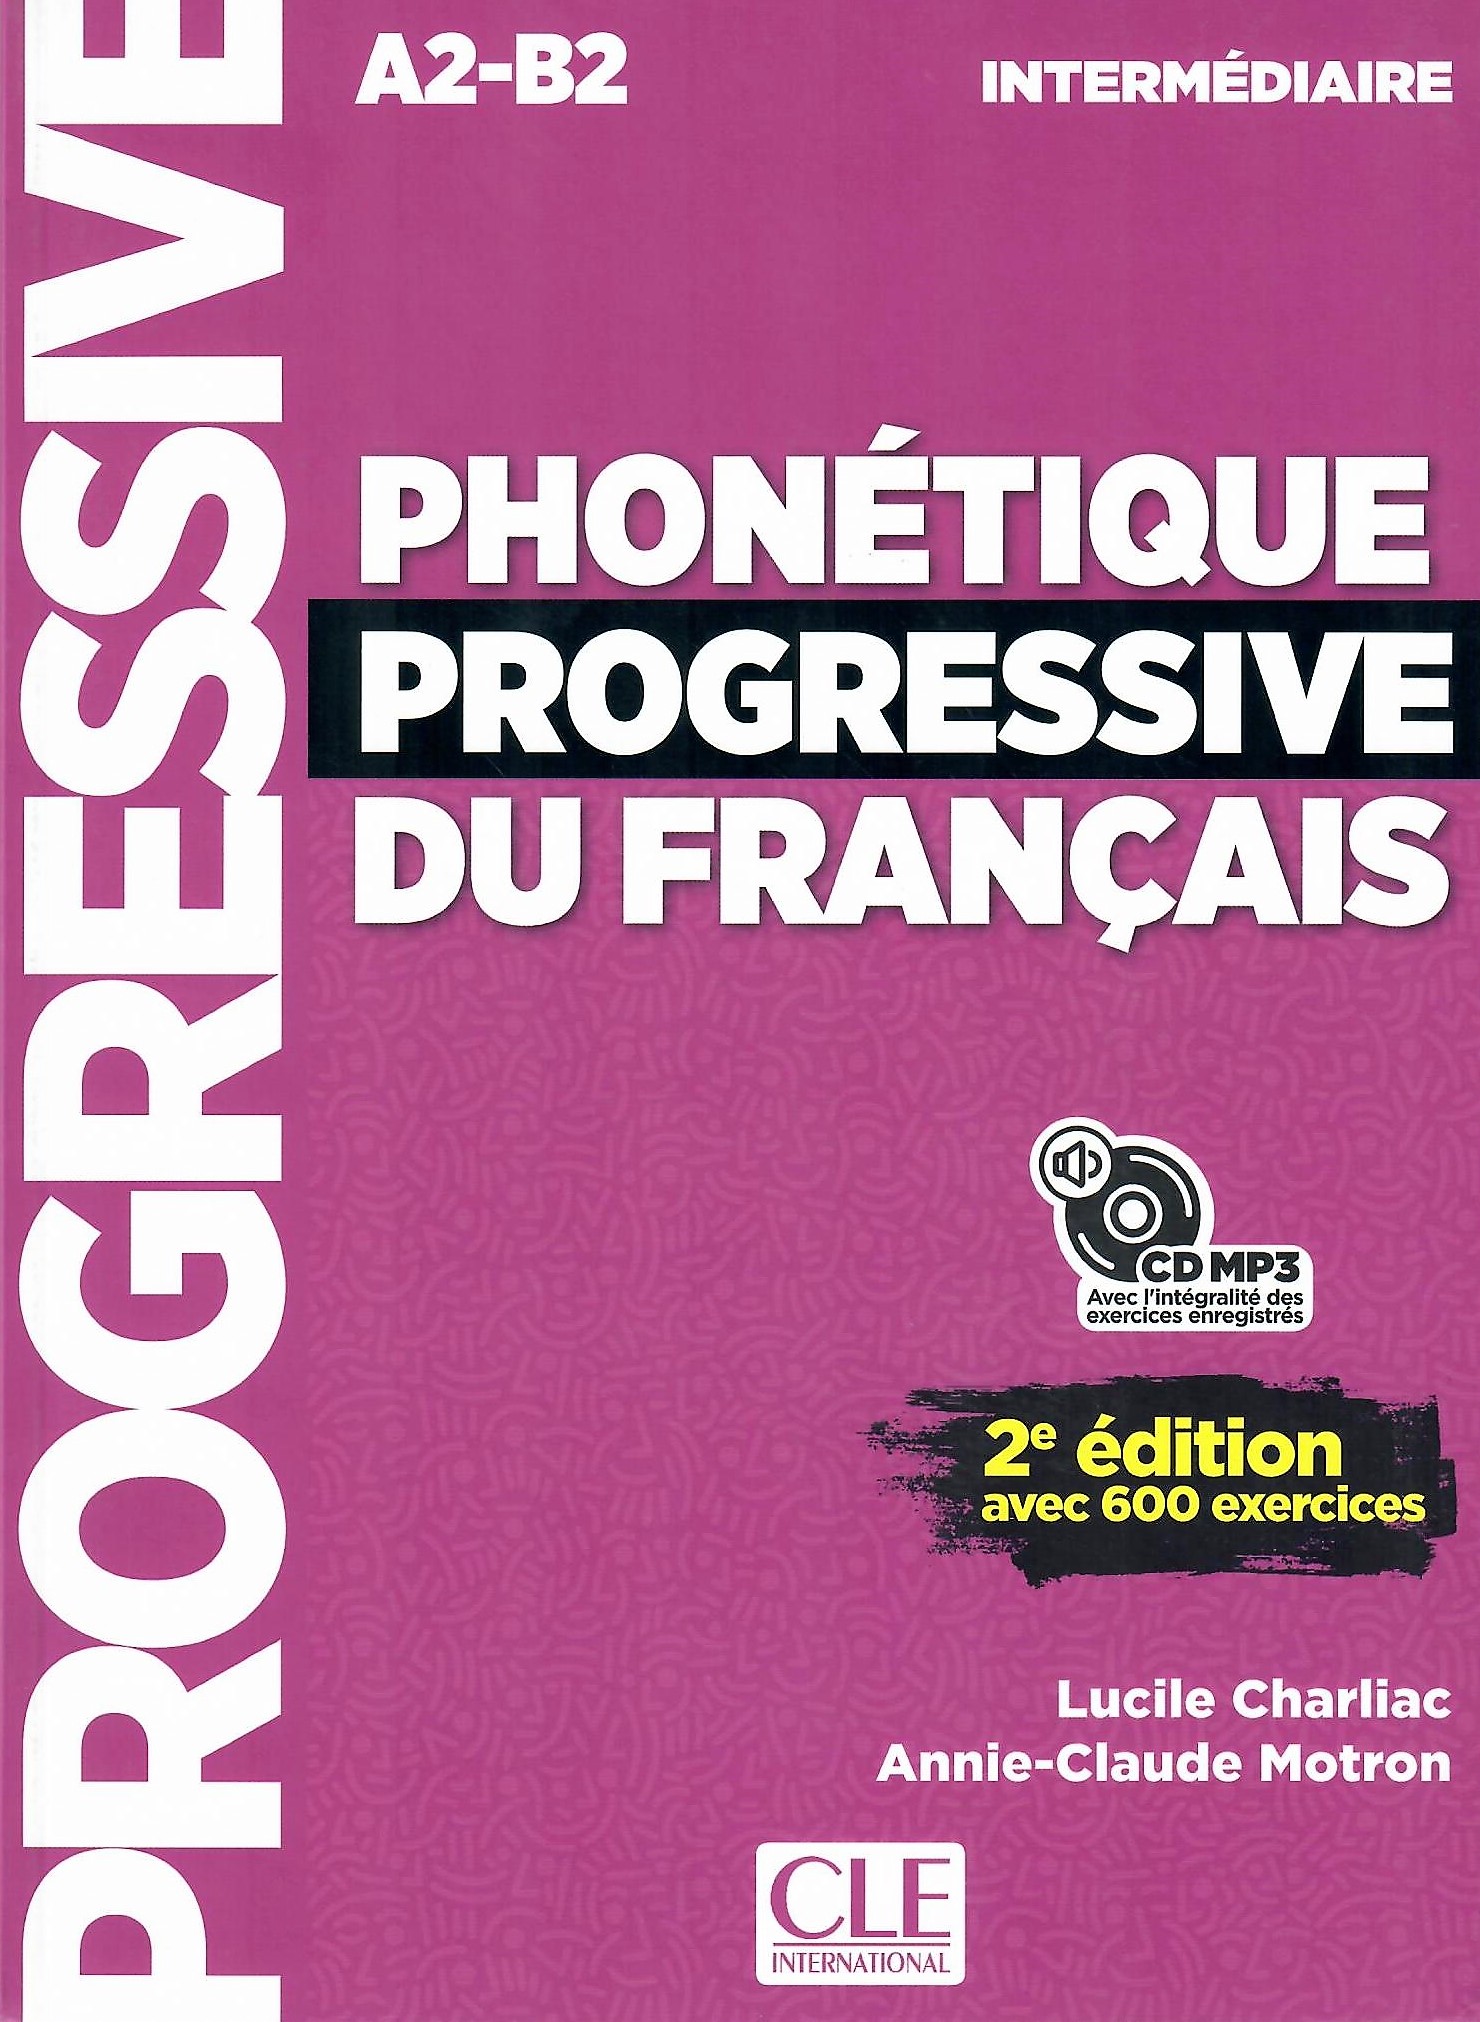 Phonetique Progressive du Francais (2e edition) Intermediaire Livre de l'eleve